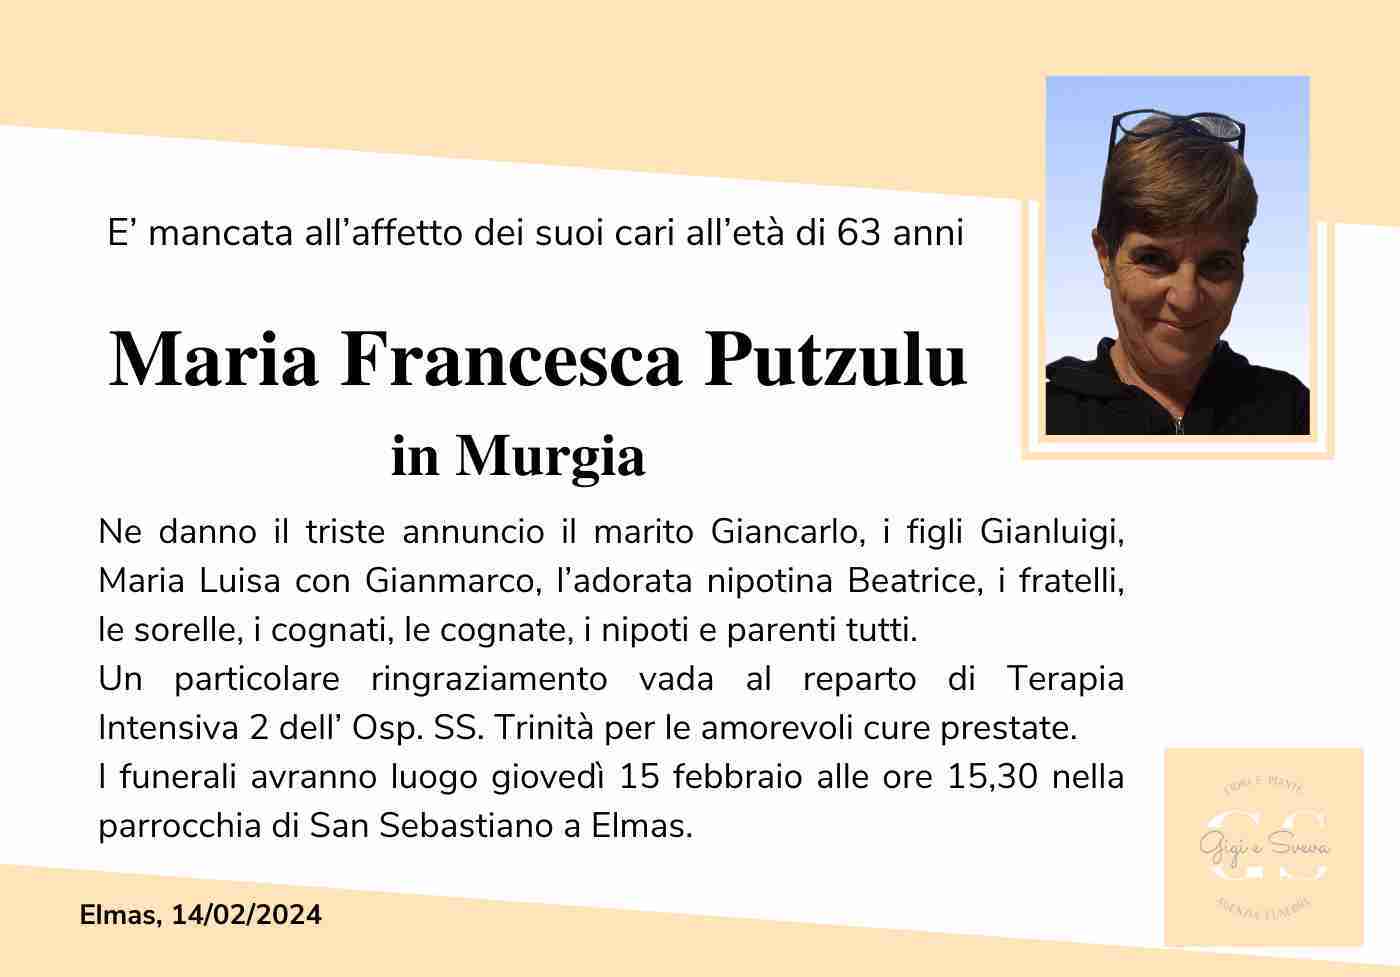 Maria Francesca Putzulu